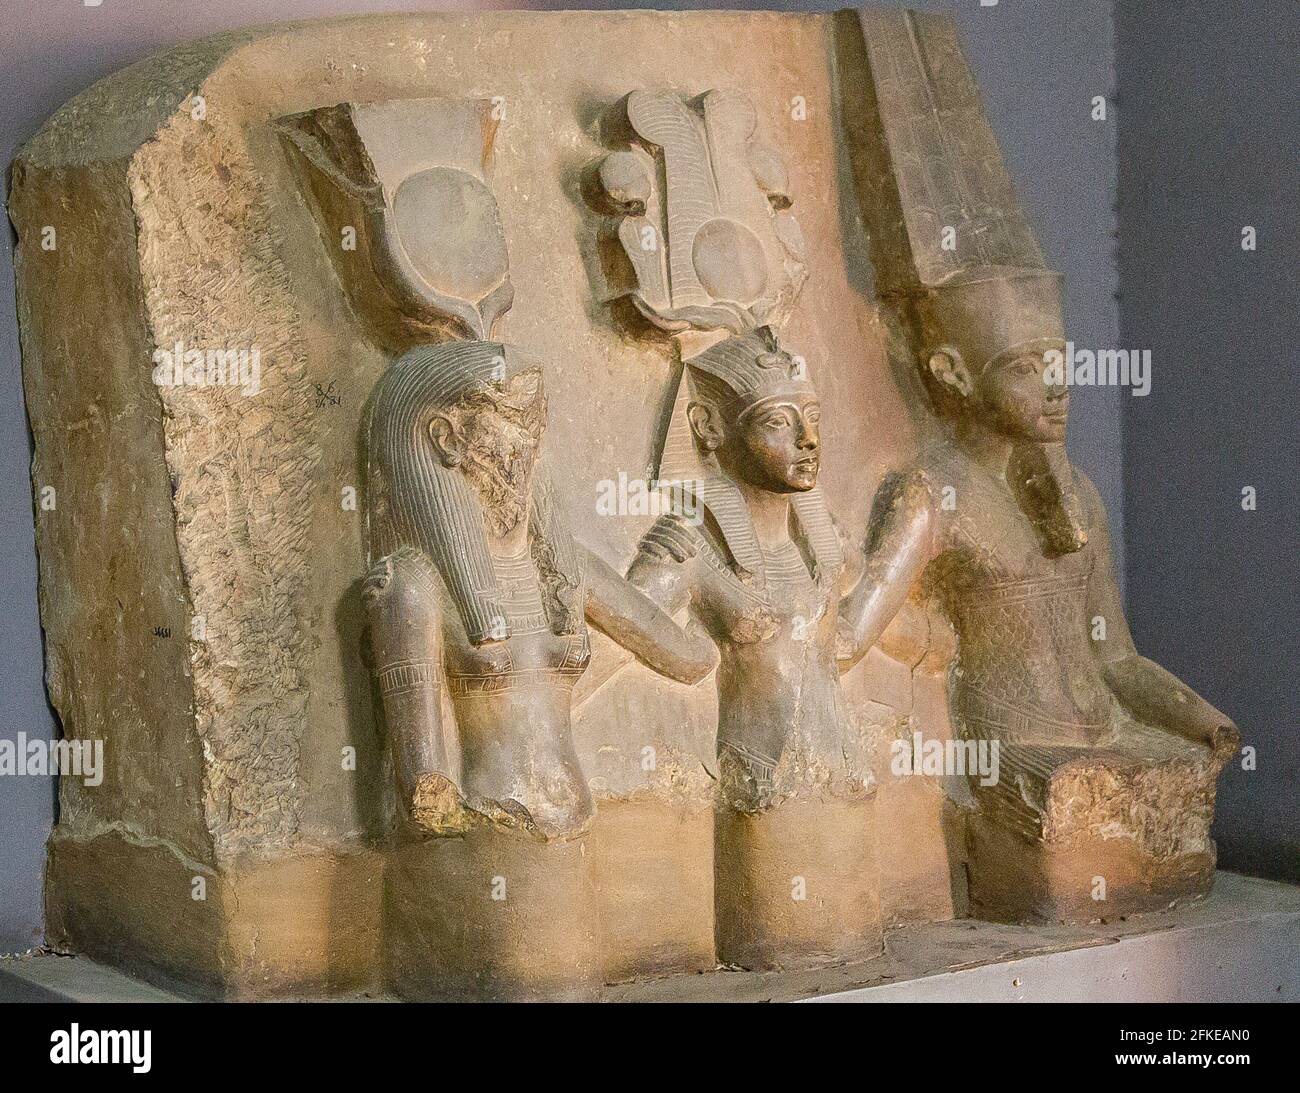 Ägypten, Kairo, Ägyptisches Museum, Kalksteinstatuengruppe des Königs Tutanchamun zwischen gott Amon und der Göttin Mut. Von der Karnak-Cachette. Stockfoto